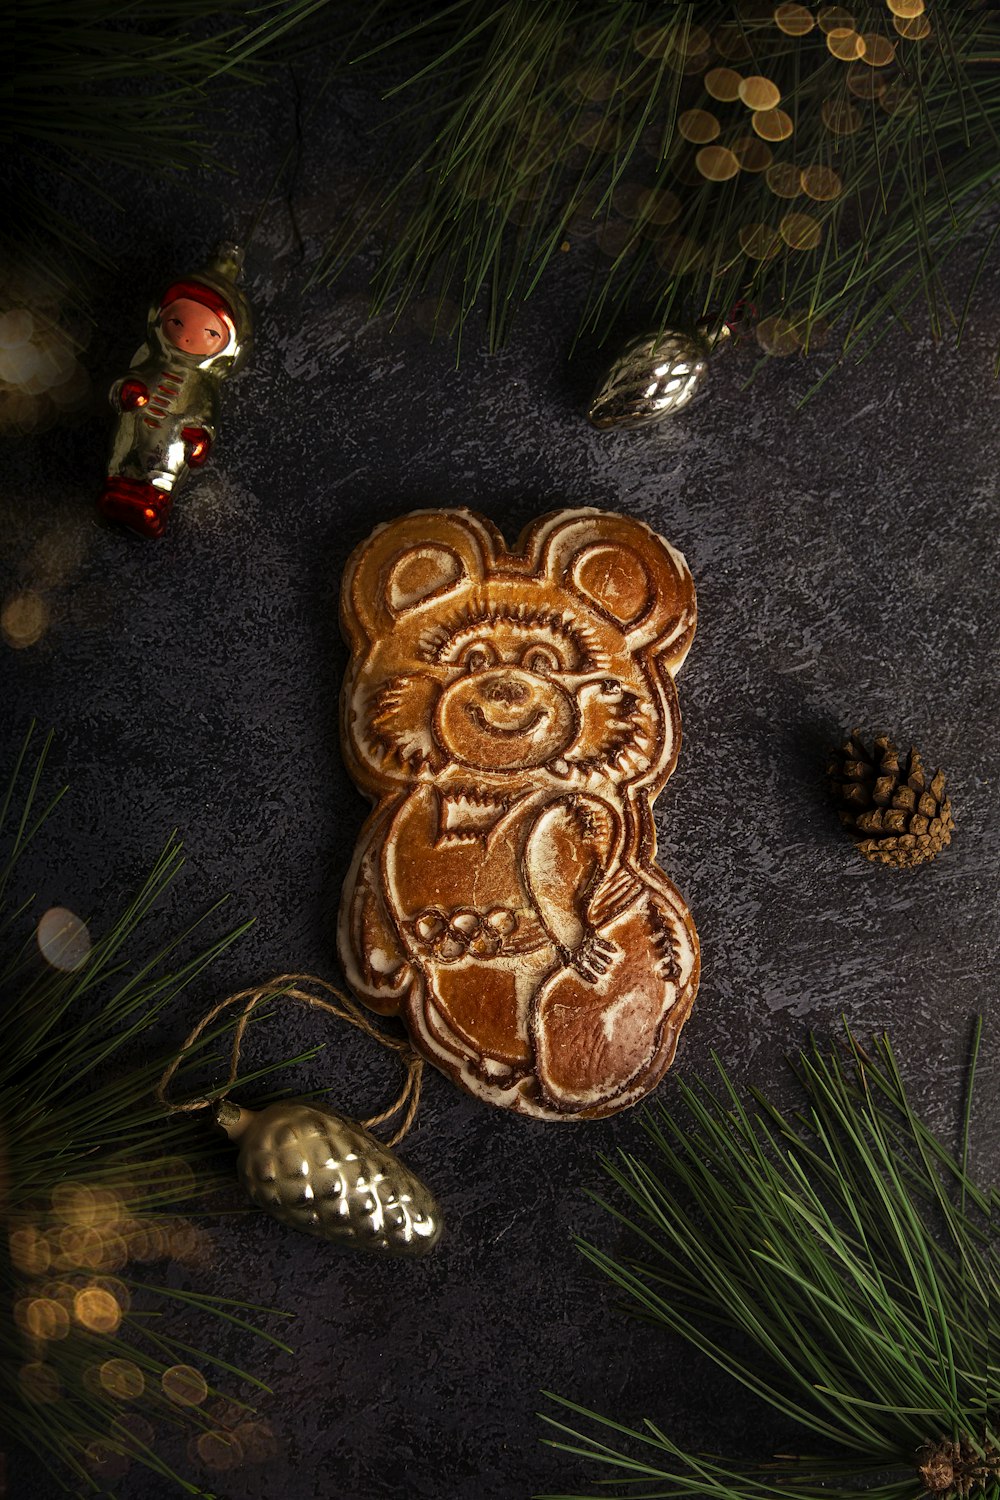 a cookie shaped like a bear on a table